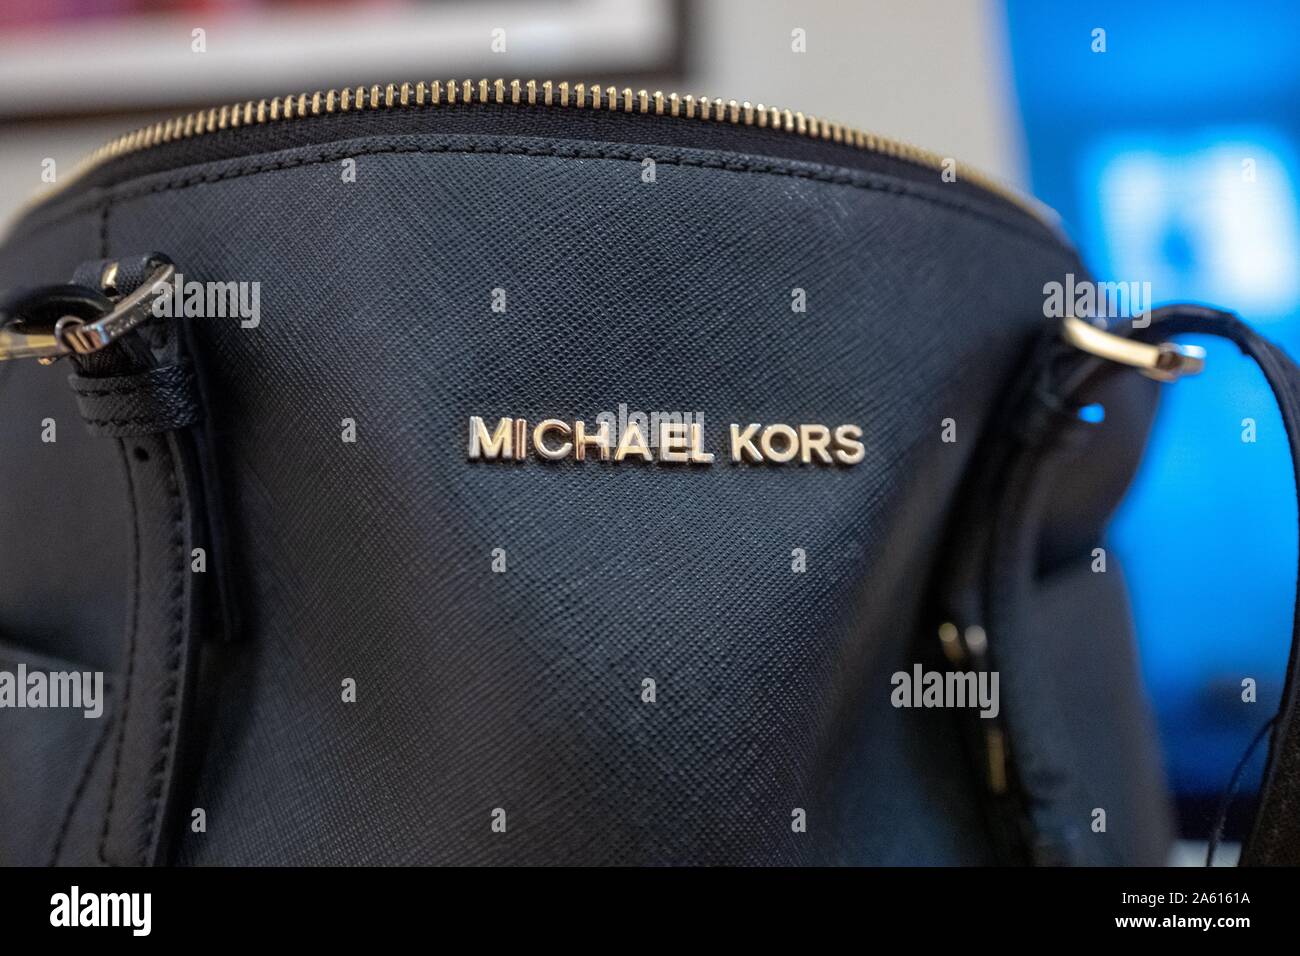 Primer plano del logotipo la empresa de ropa Michael Kors en un bolso de cuero negro en una habitación doméstica, 21 de agosto de Fotografía de stock Alamy